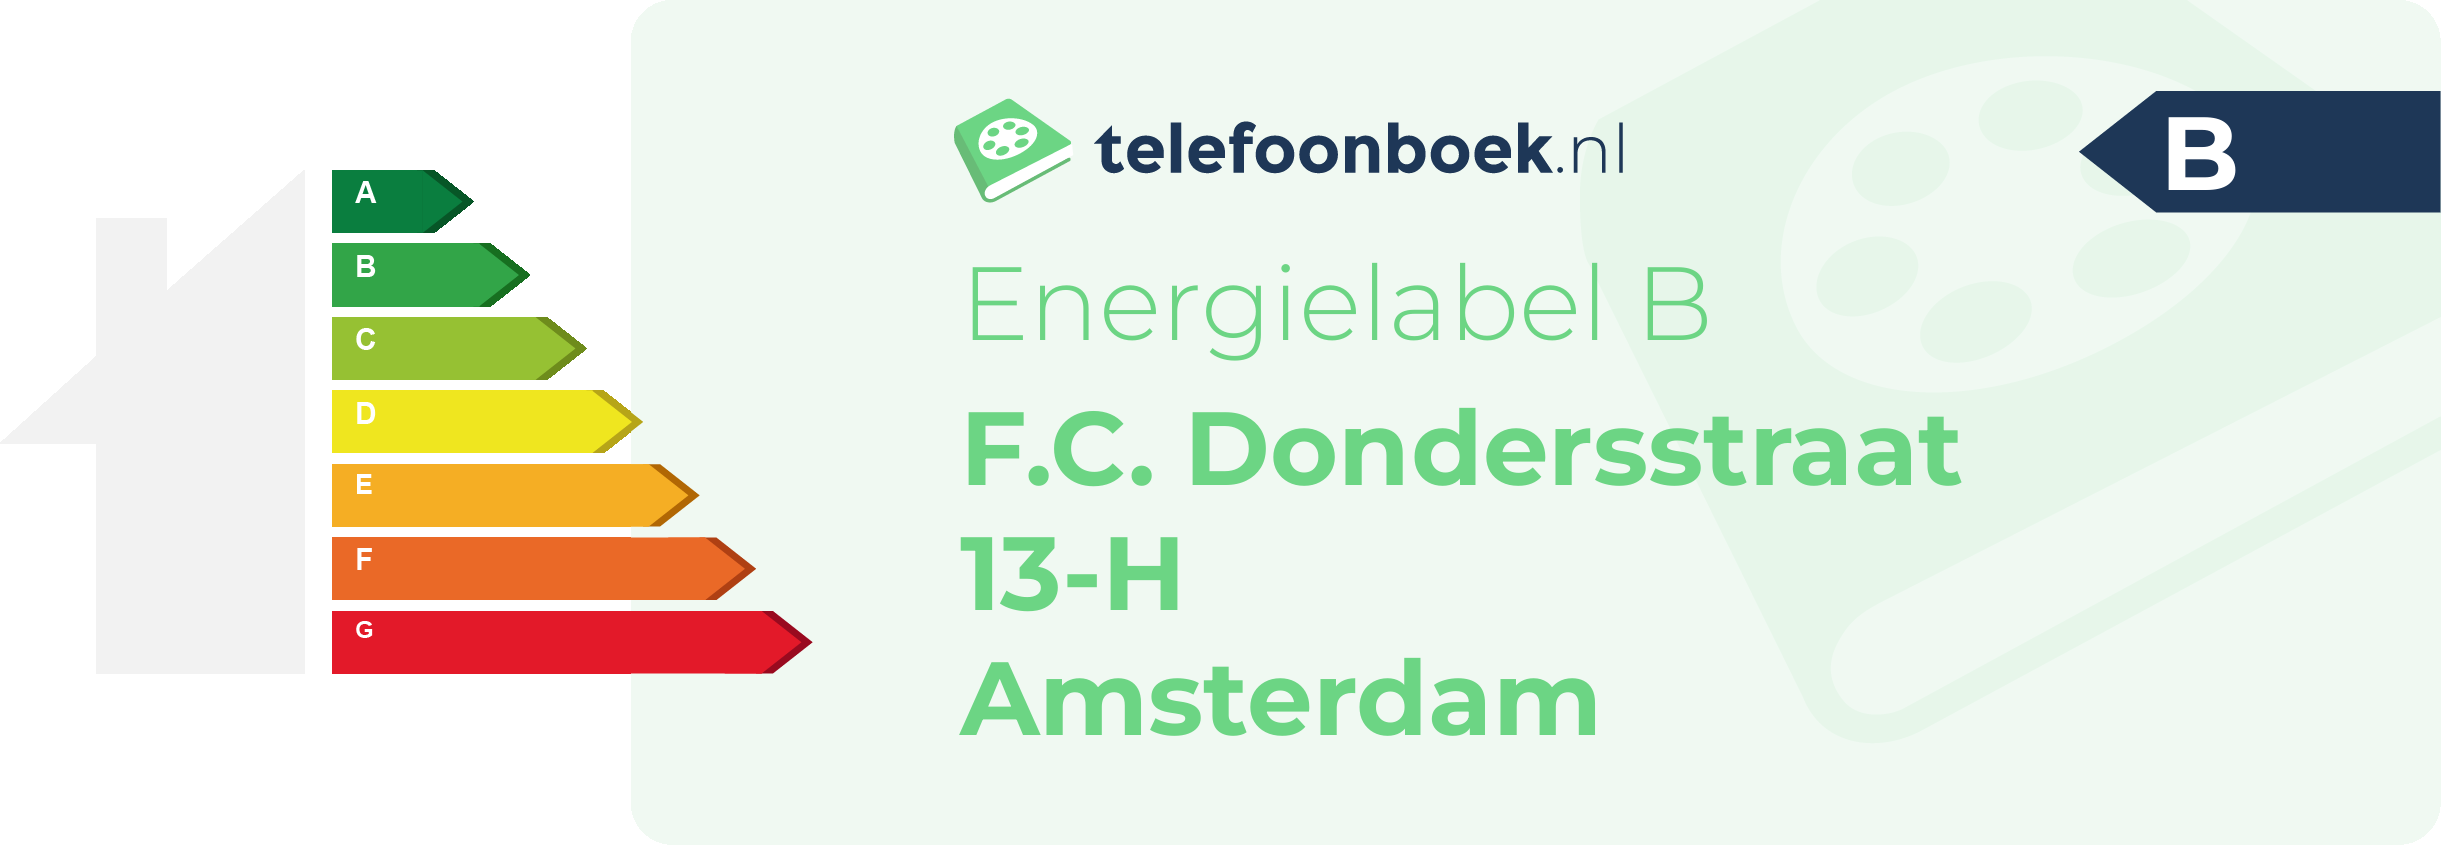 Energielabel F.C. Dondersstraat 13-H Amsterdam